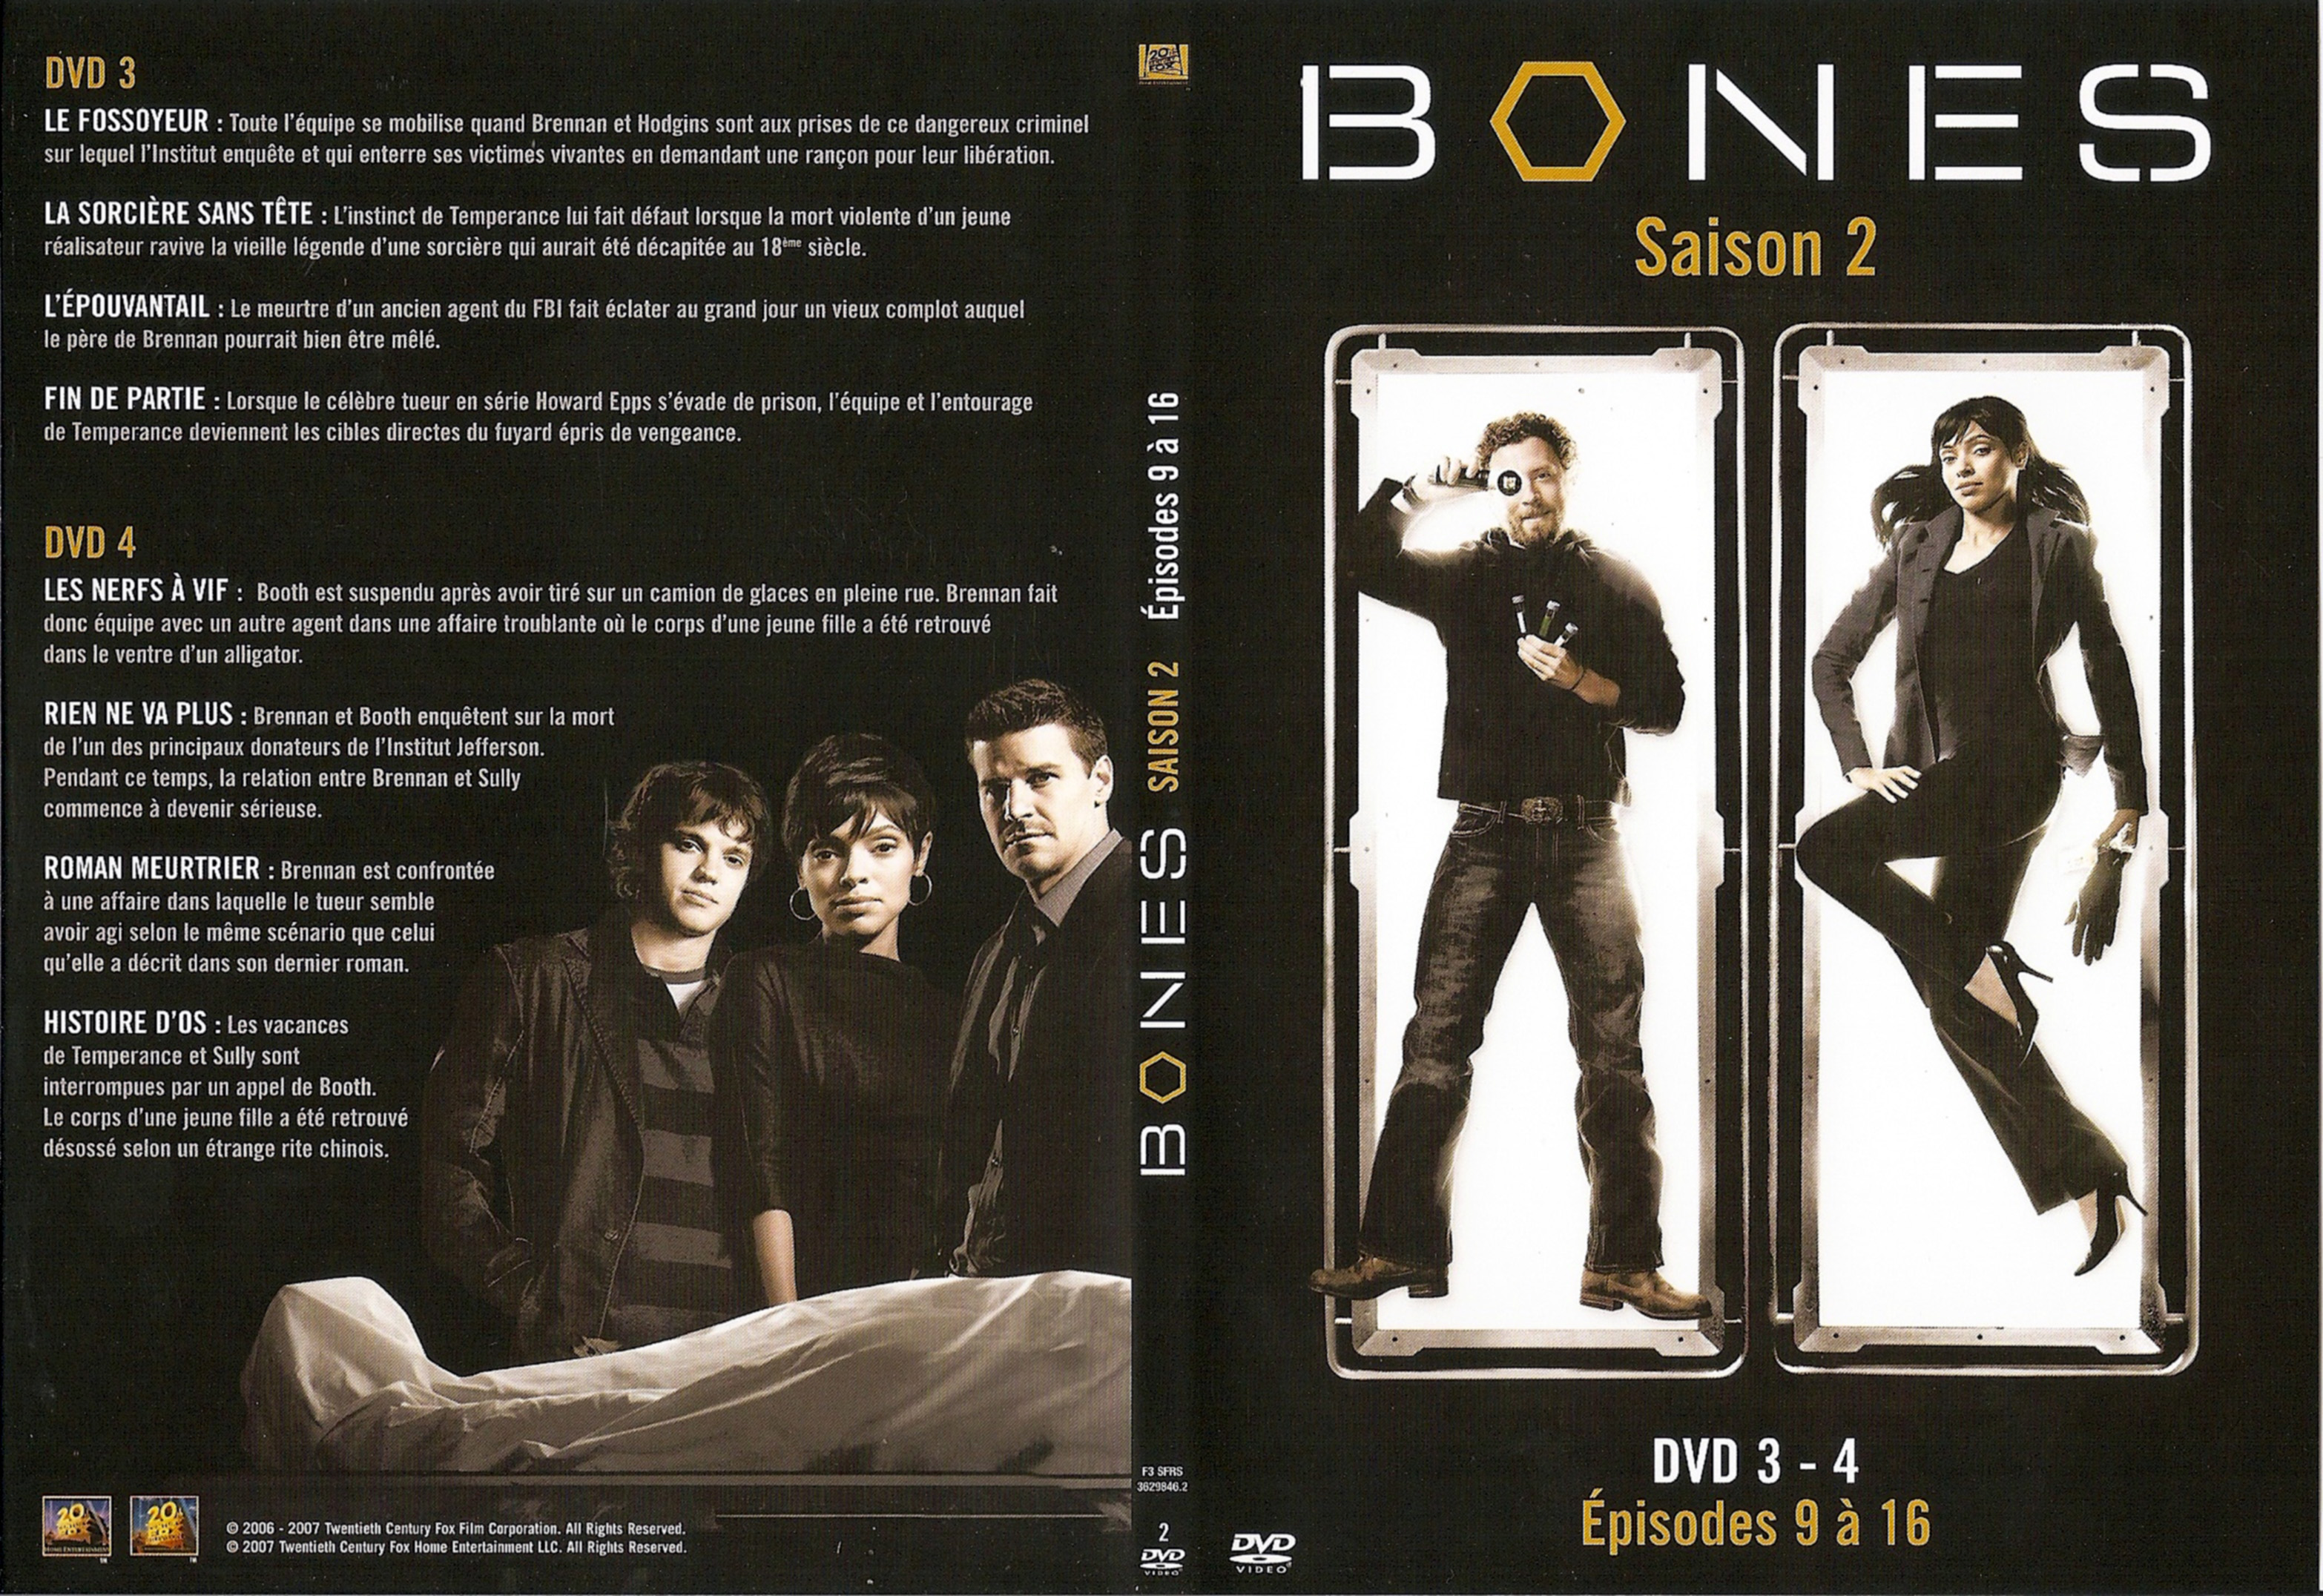 Jaquette DVD Bones Saison 2 DVD 2